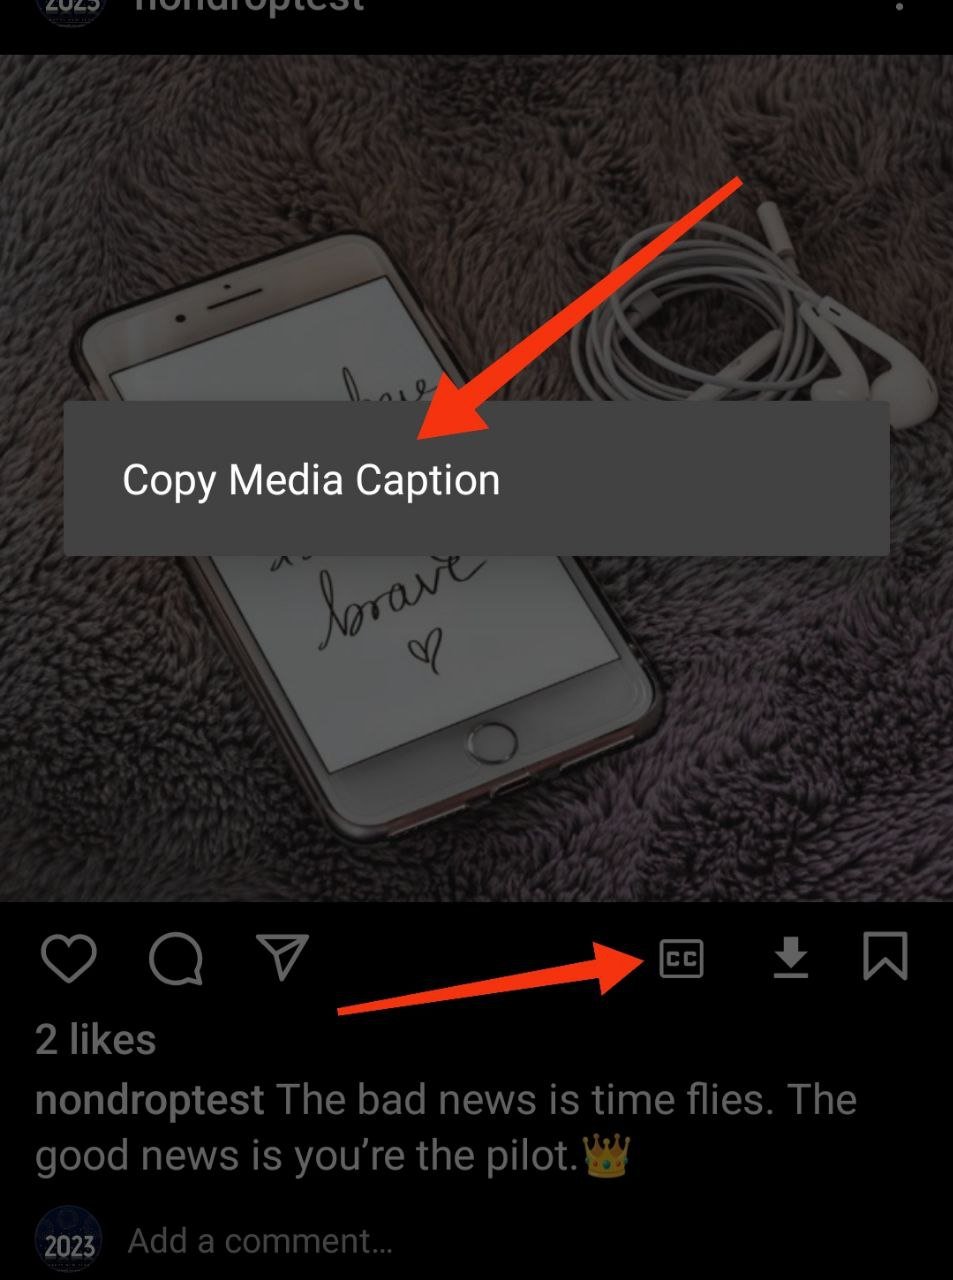 Copy Media Captions